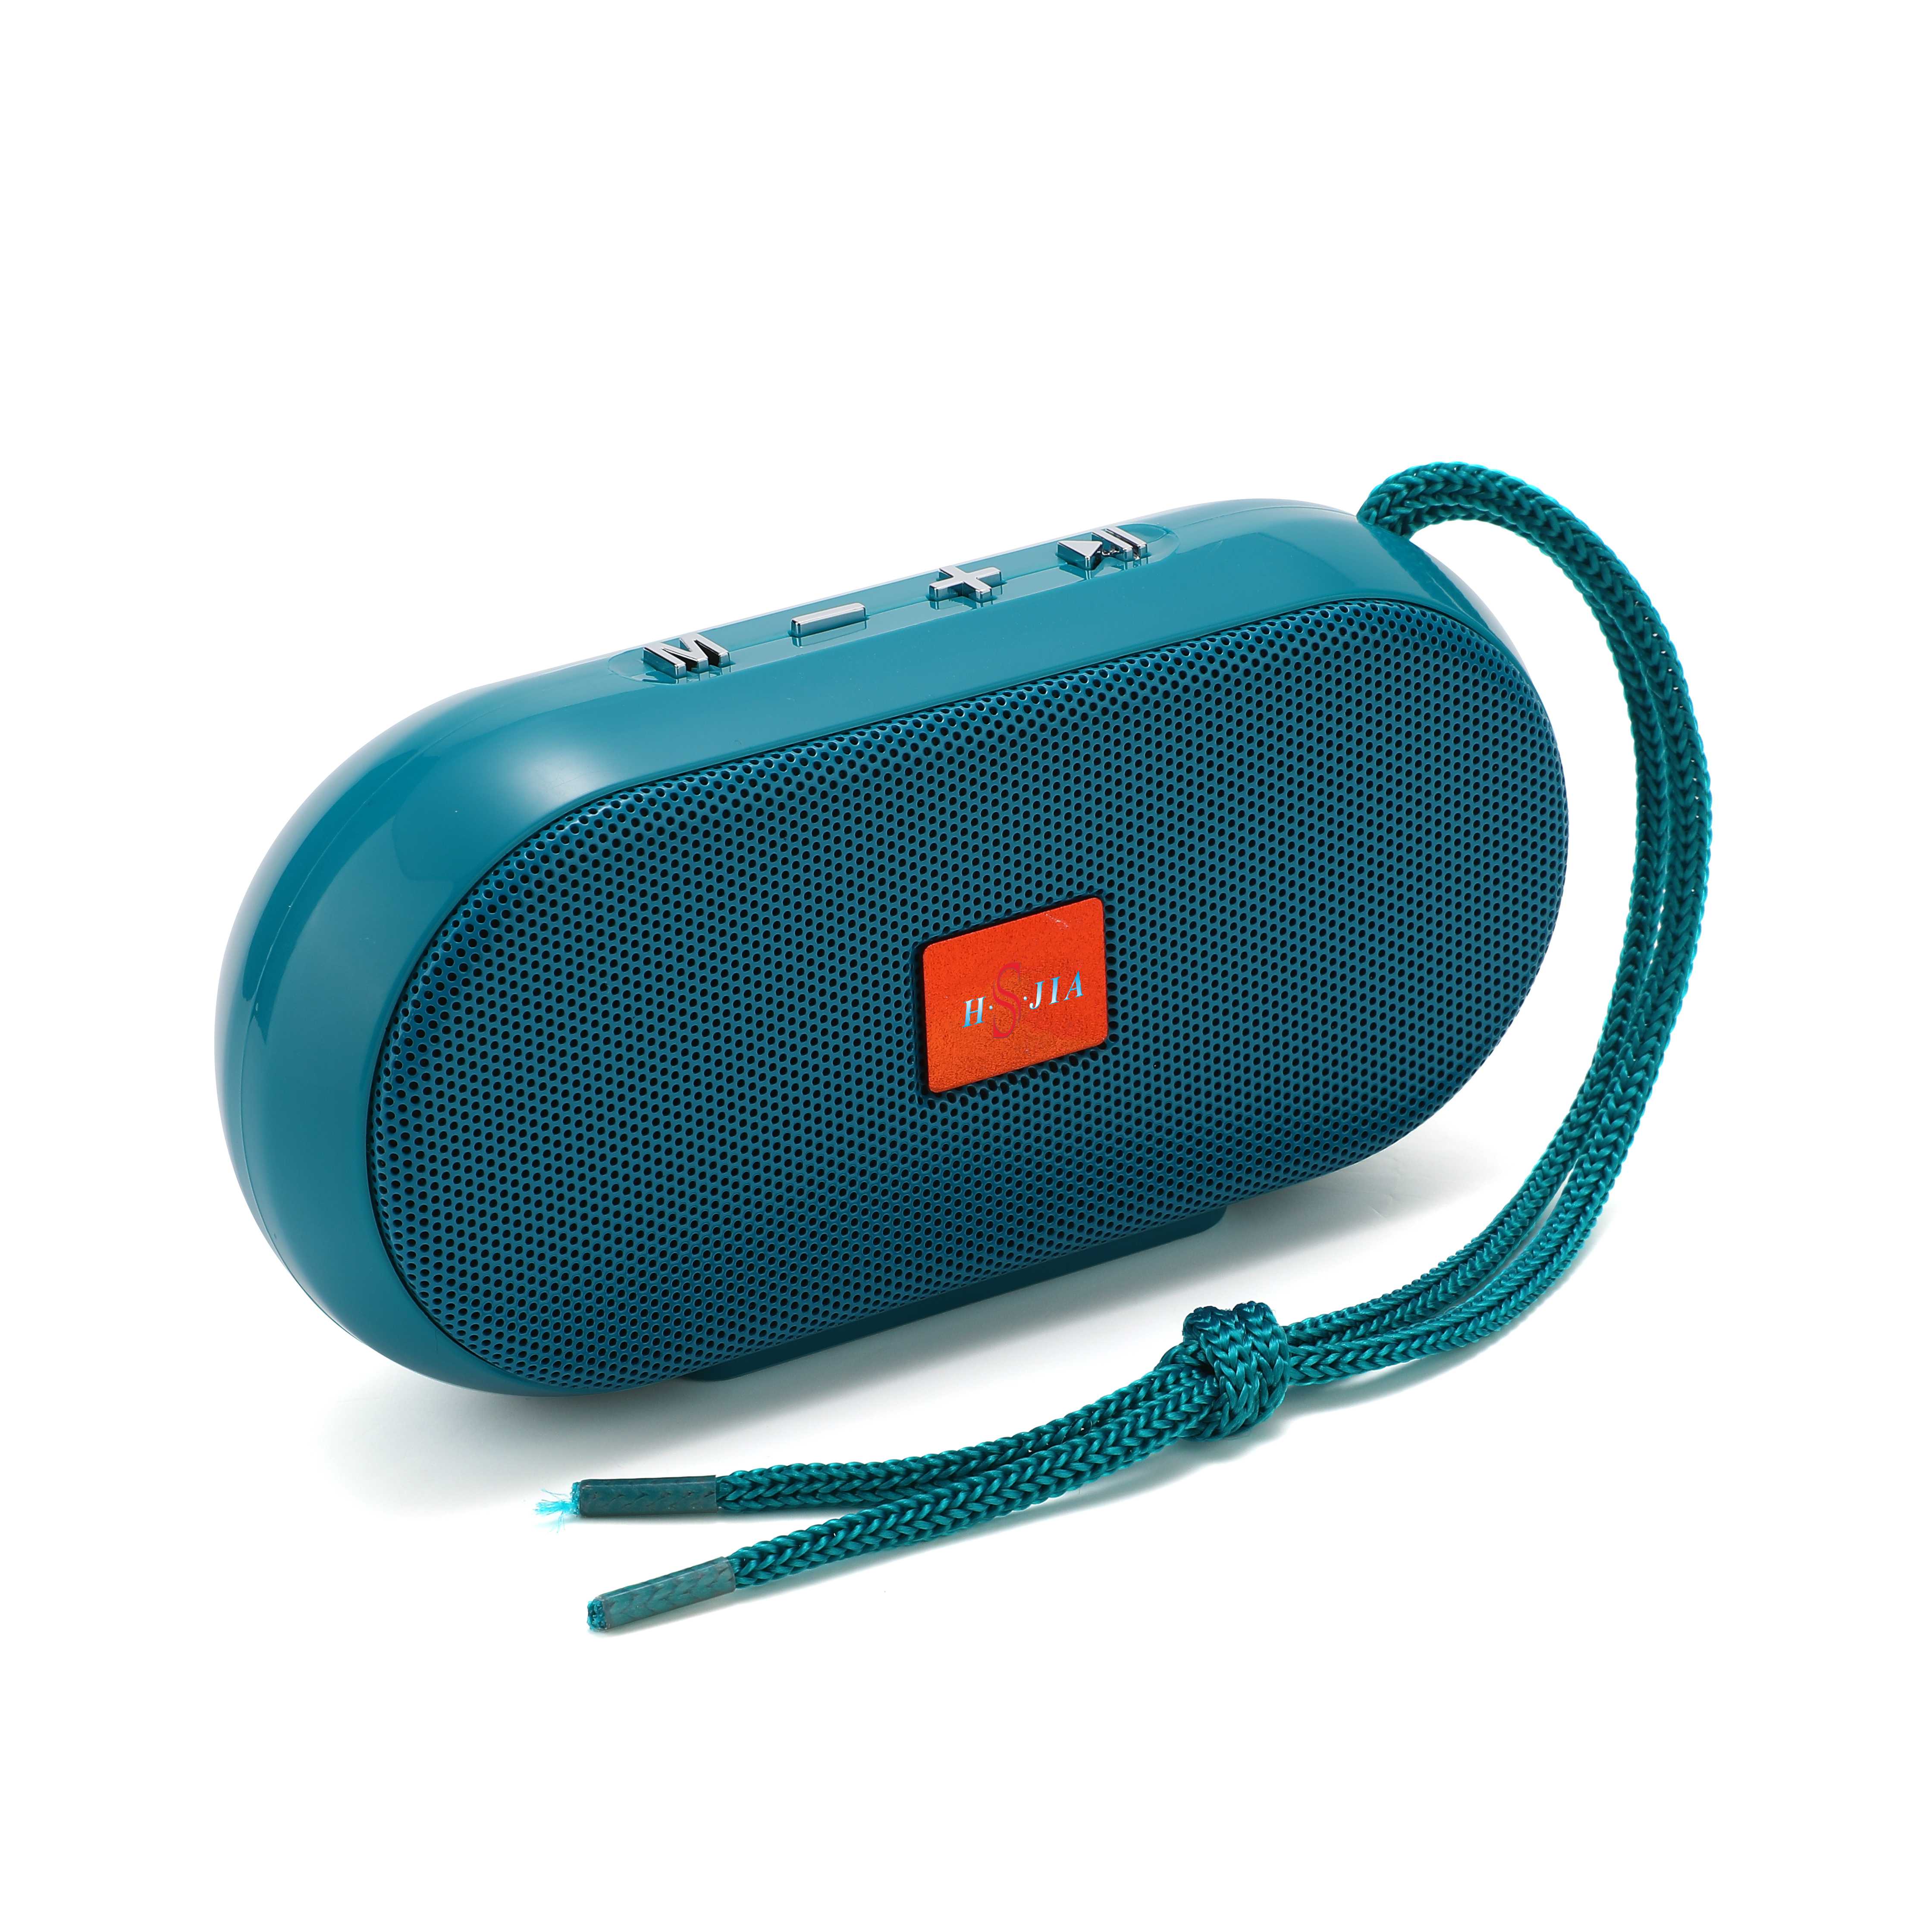 HS-2453 Bluetooth speaker wireless speaker portable plug-in wireless speaker